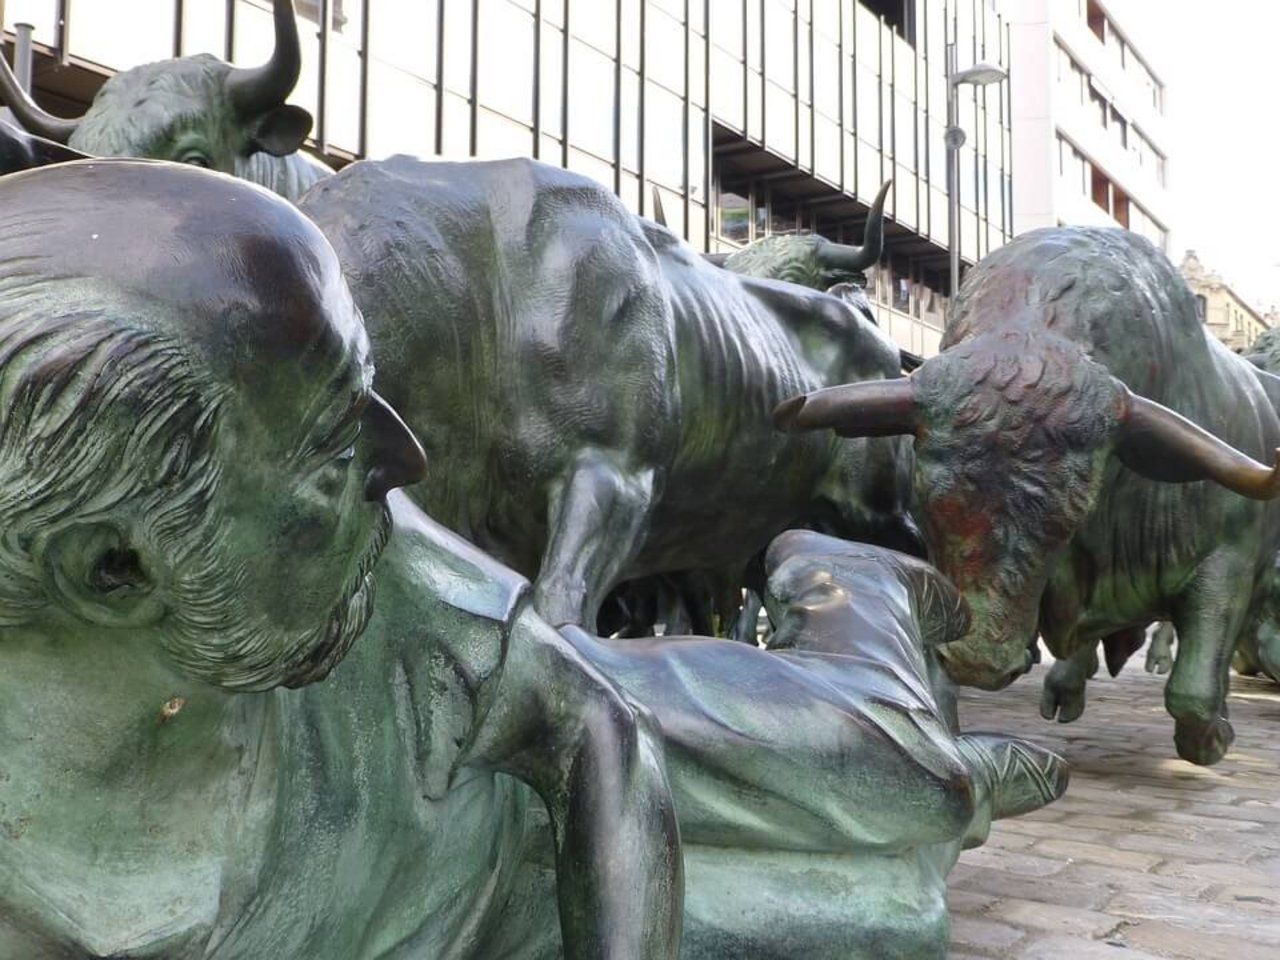 Stierhatz ist gefährlich, wie diese Statue in Pamplona, Spanien zeigt. (Bild Pixabay)